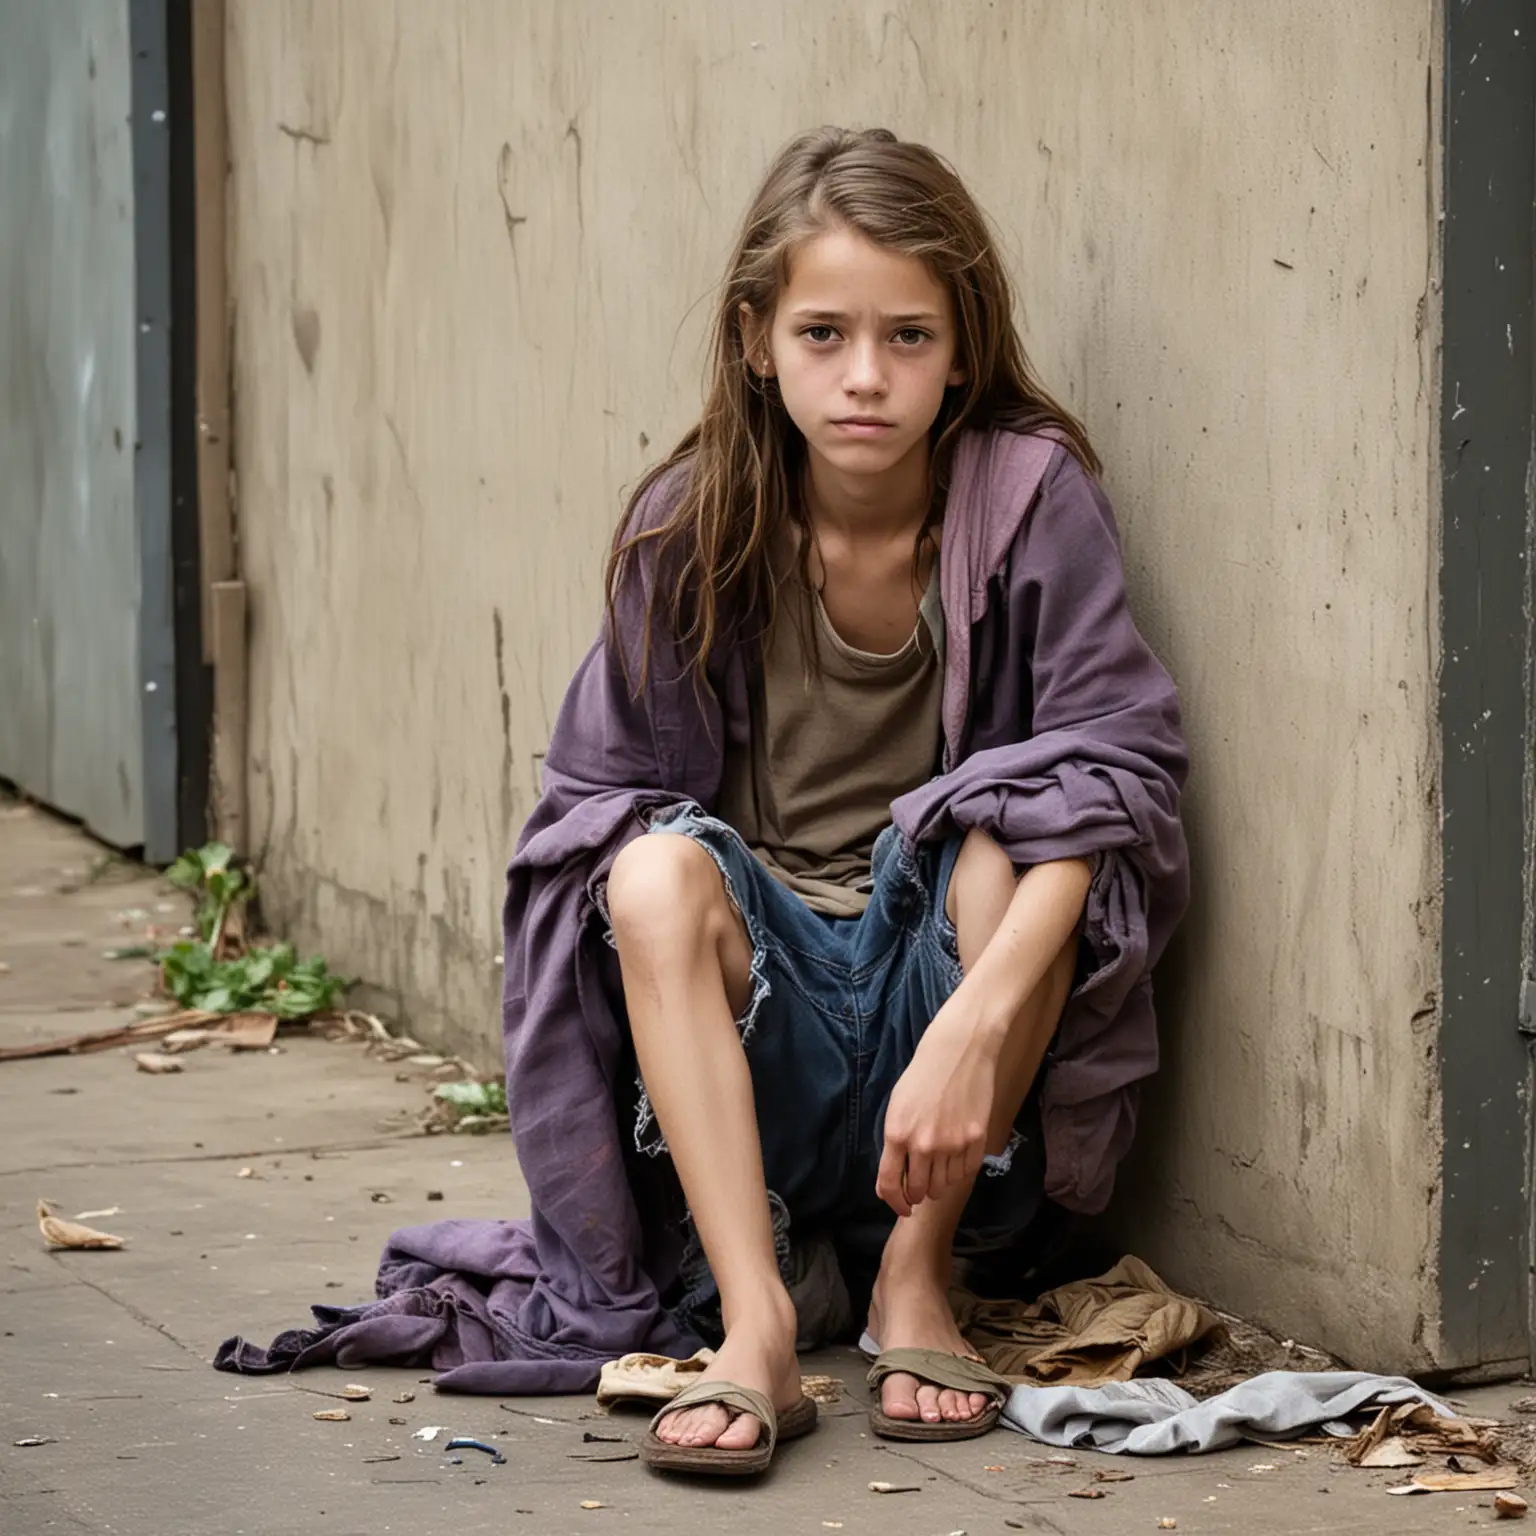 skinny homeless preteen girl 